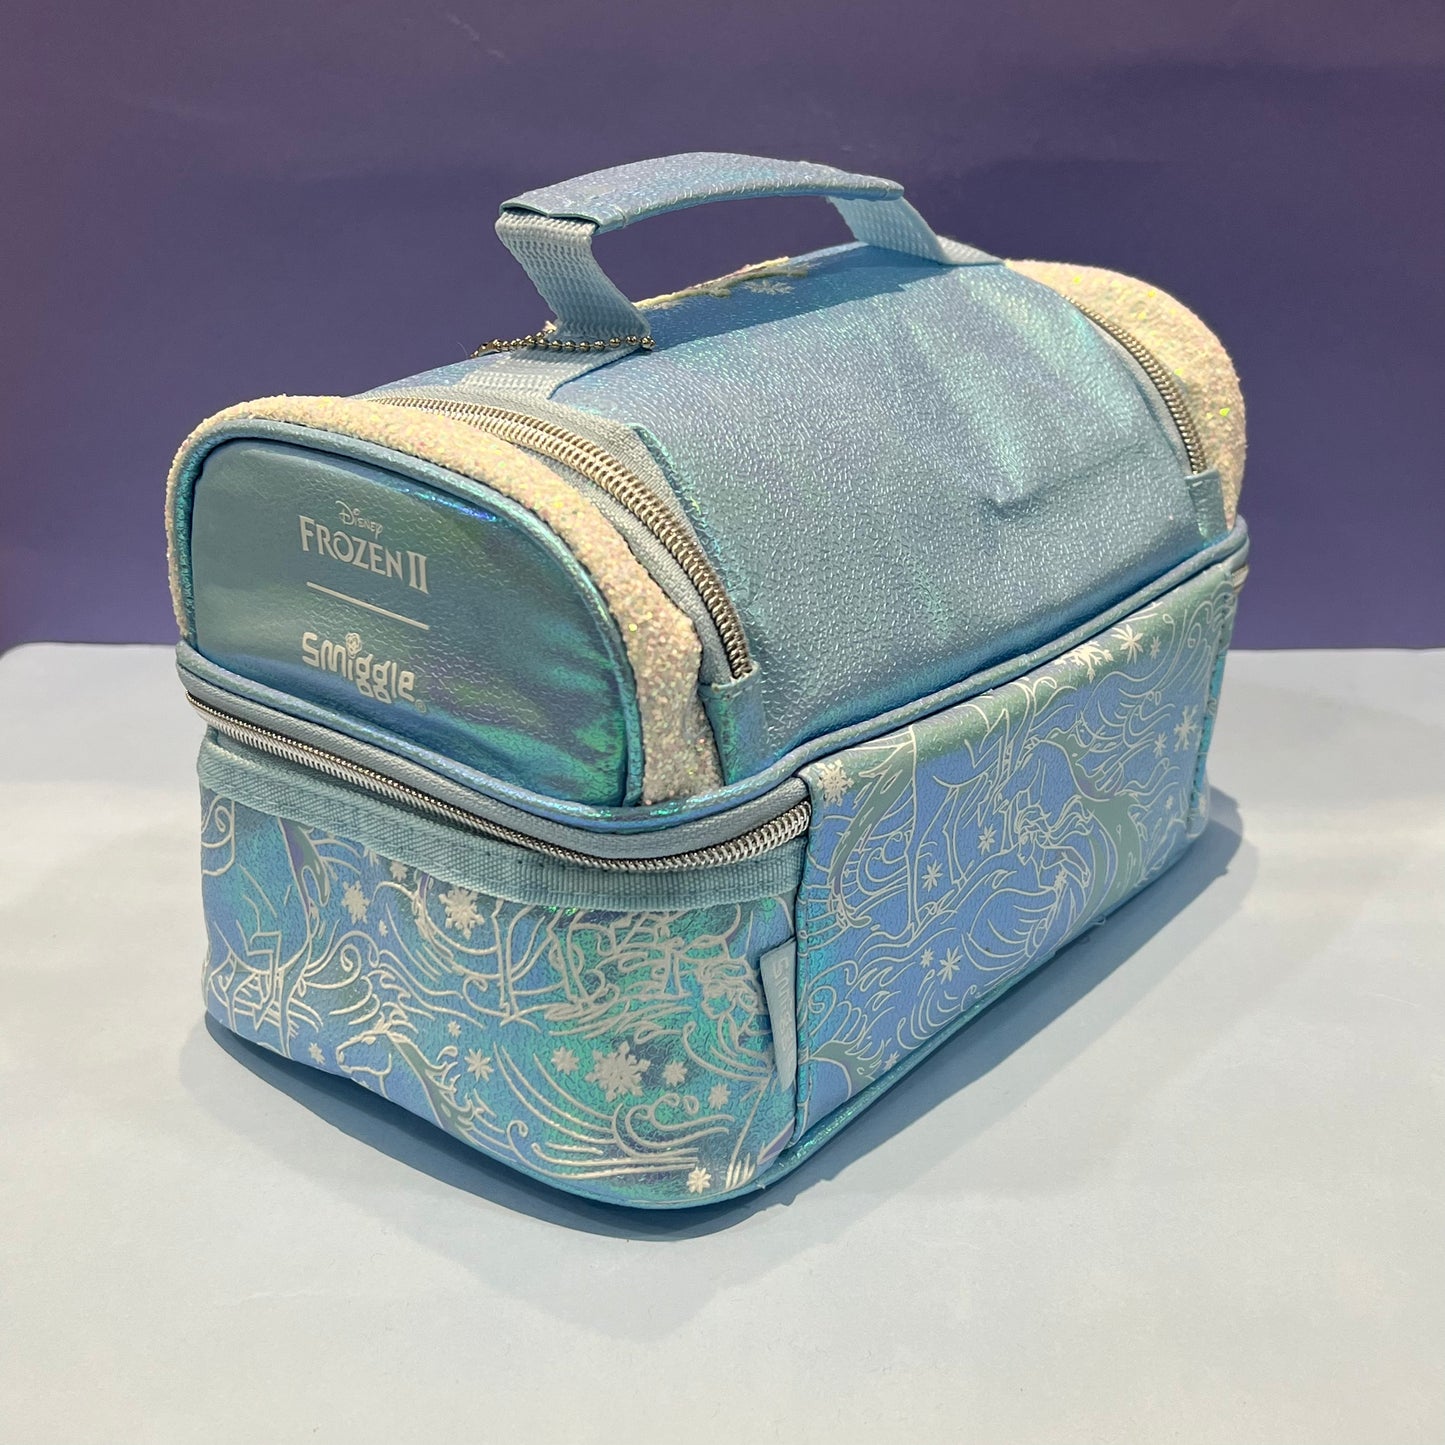 Frozen’s Luxury Double Dekcer Lunchbag